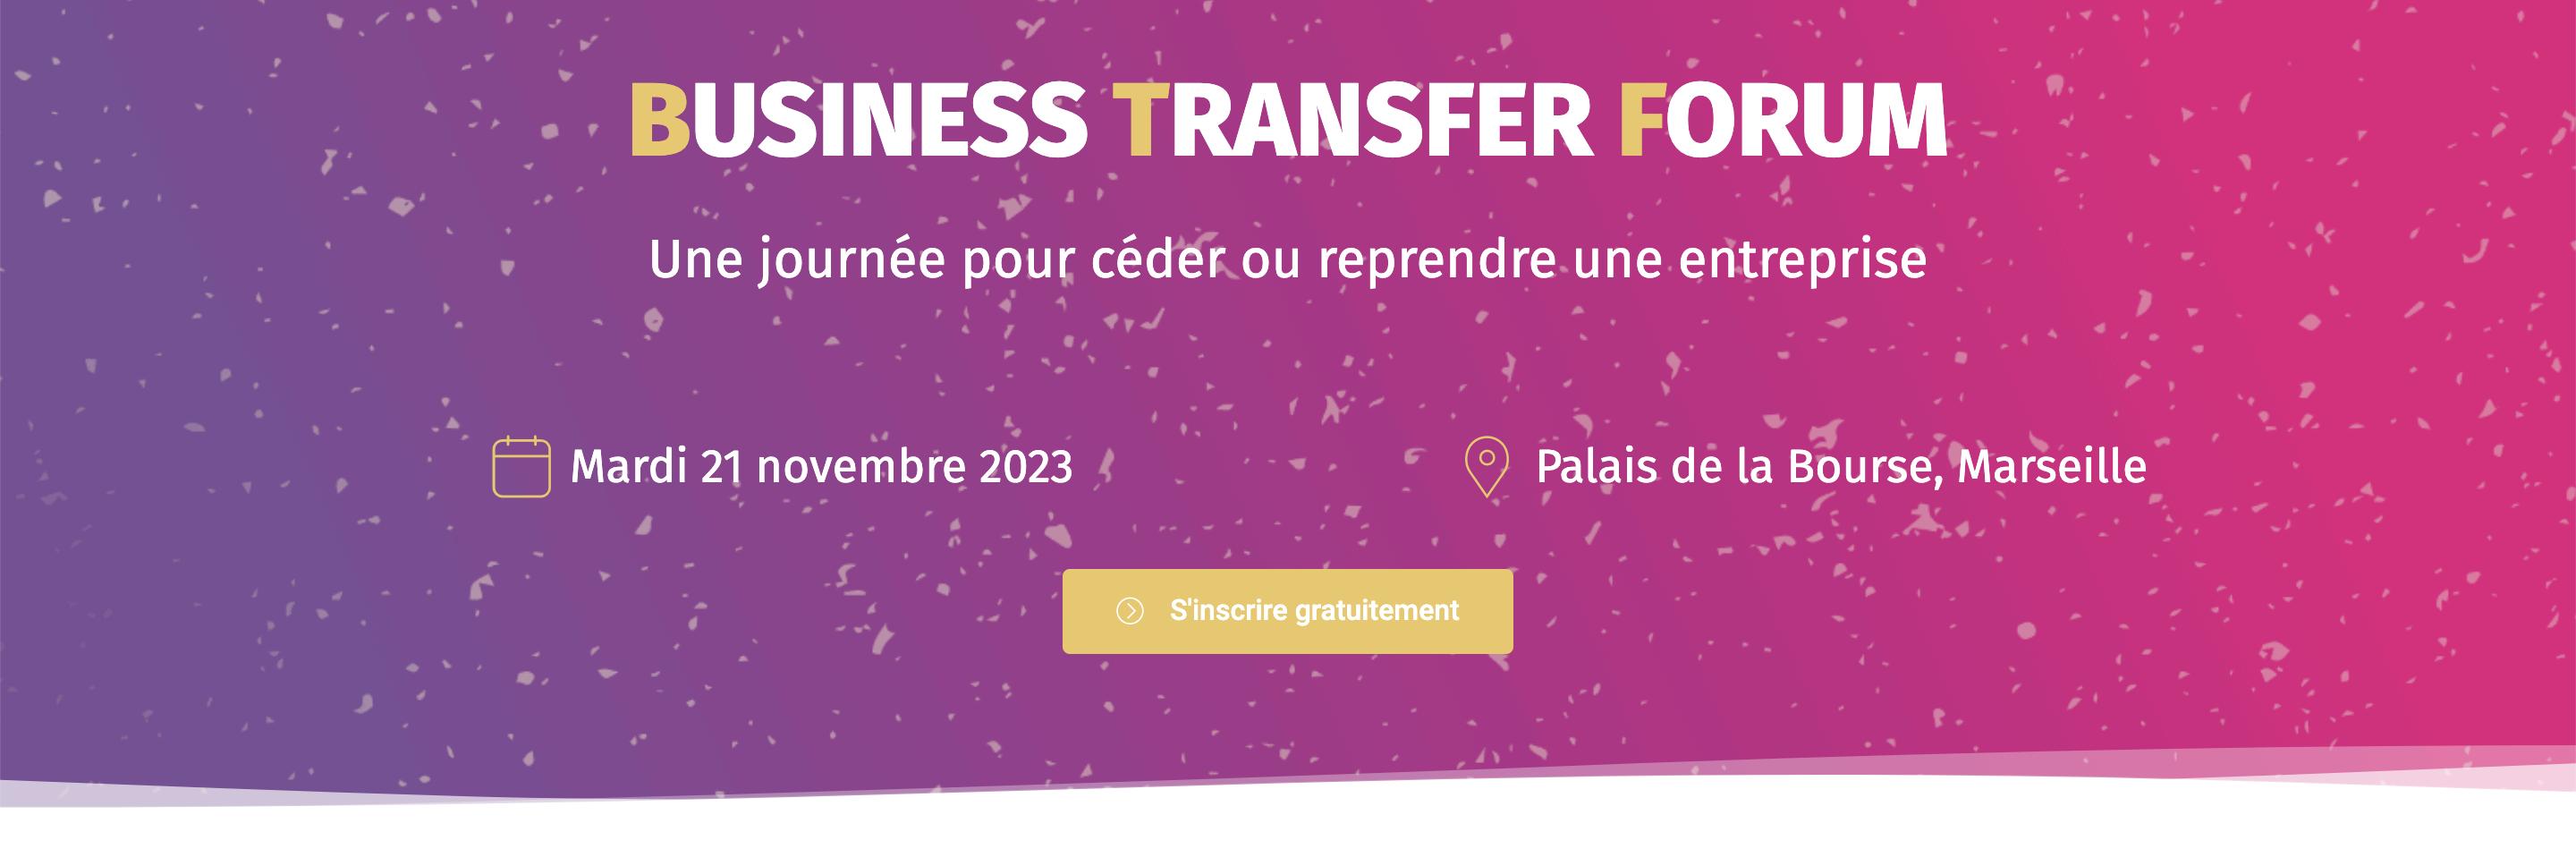 Business Transfer Forum